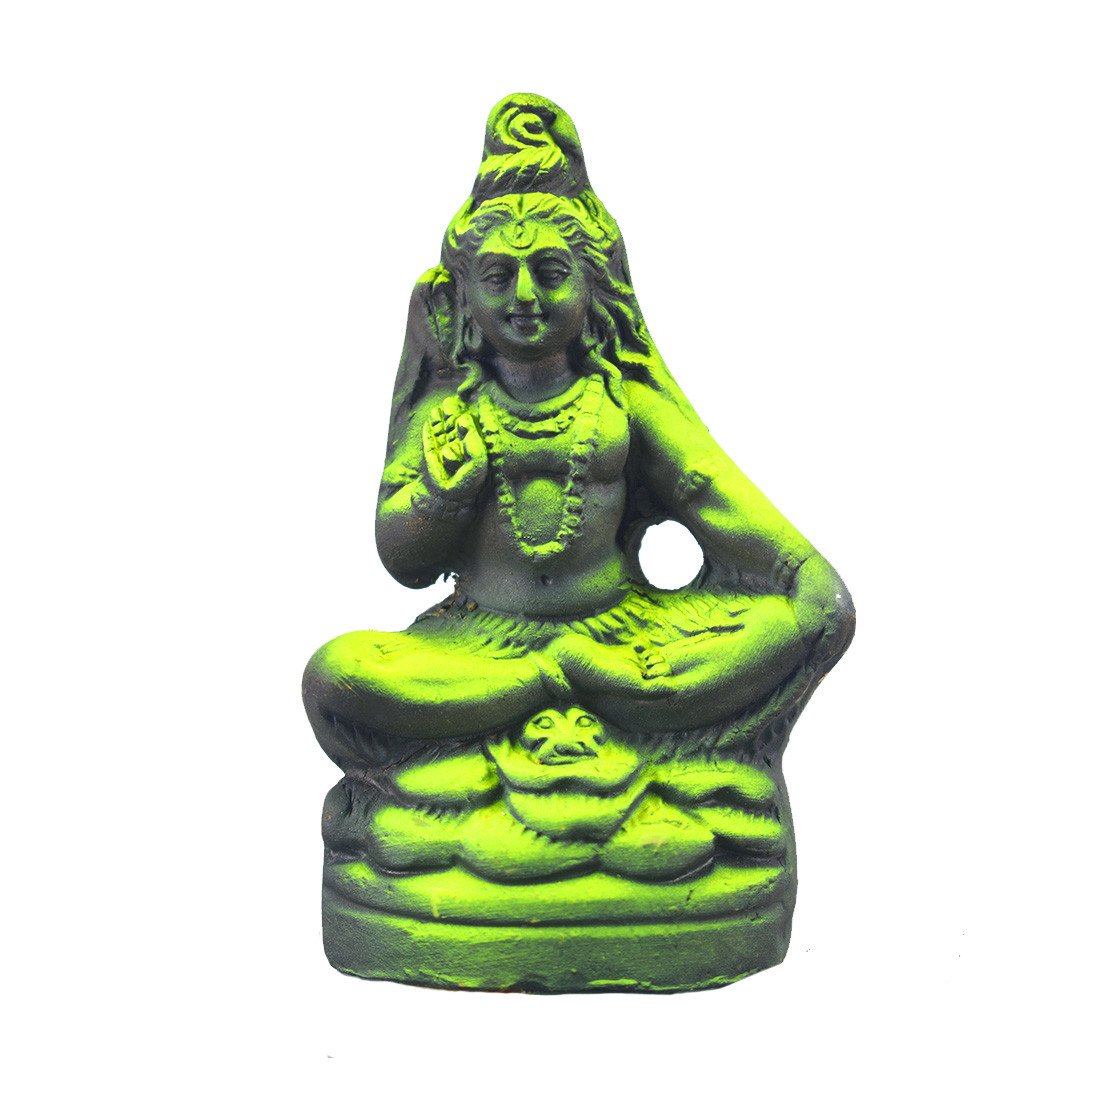 Lord Shiva Murti Handmade Clay Idols Showcase with Mahadev Statue (4.5 inches)